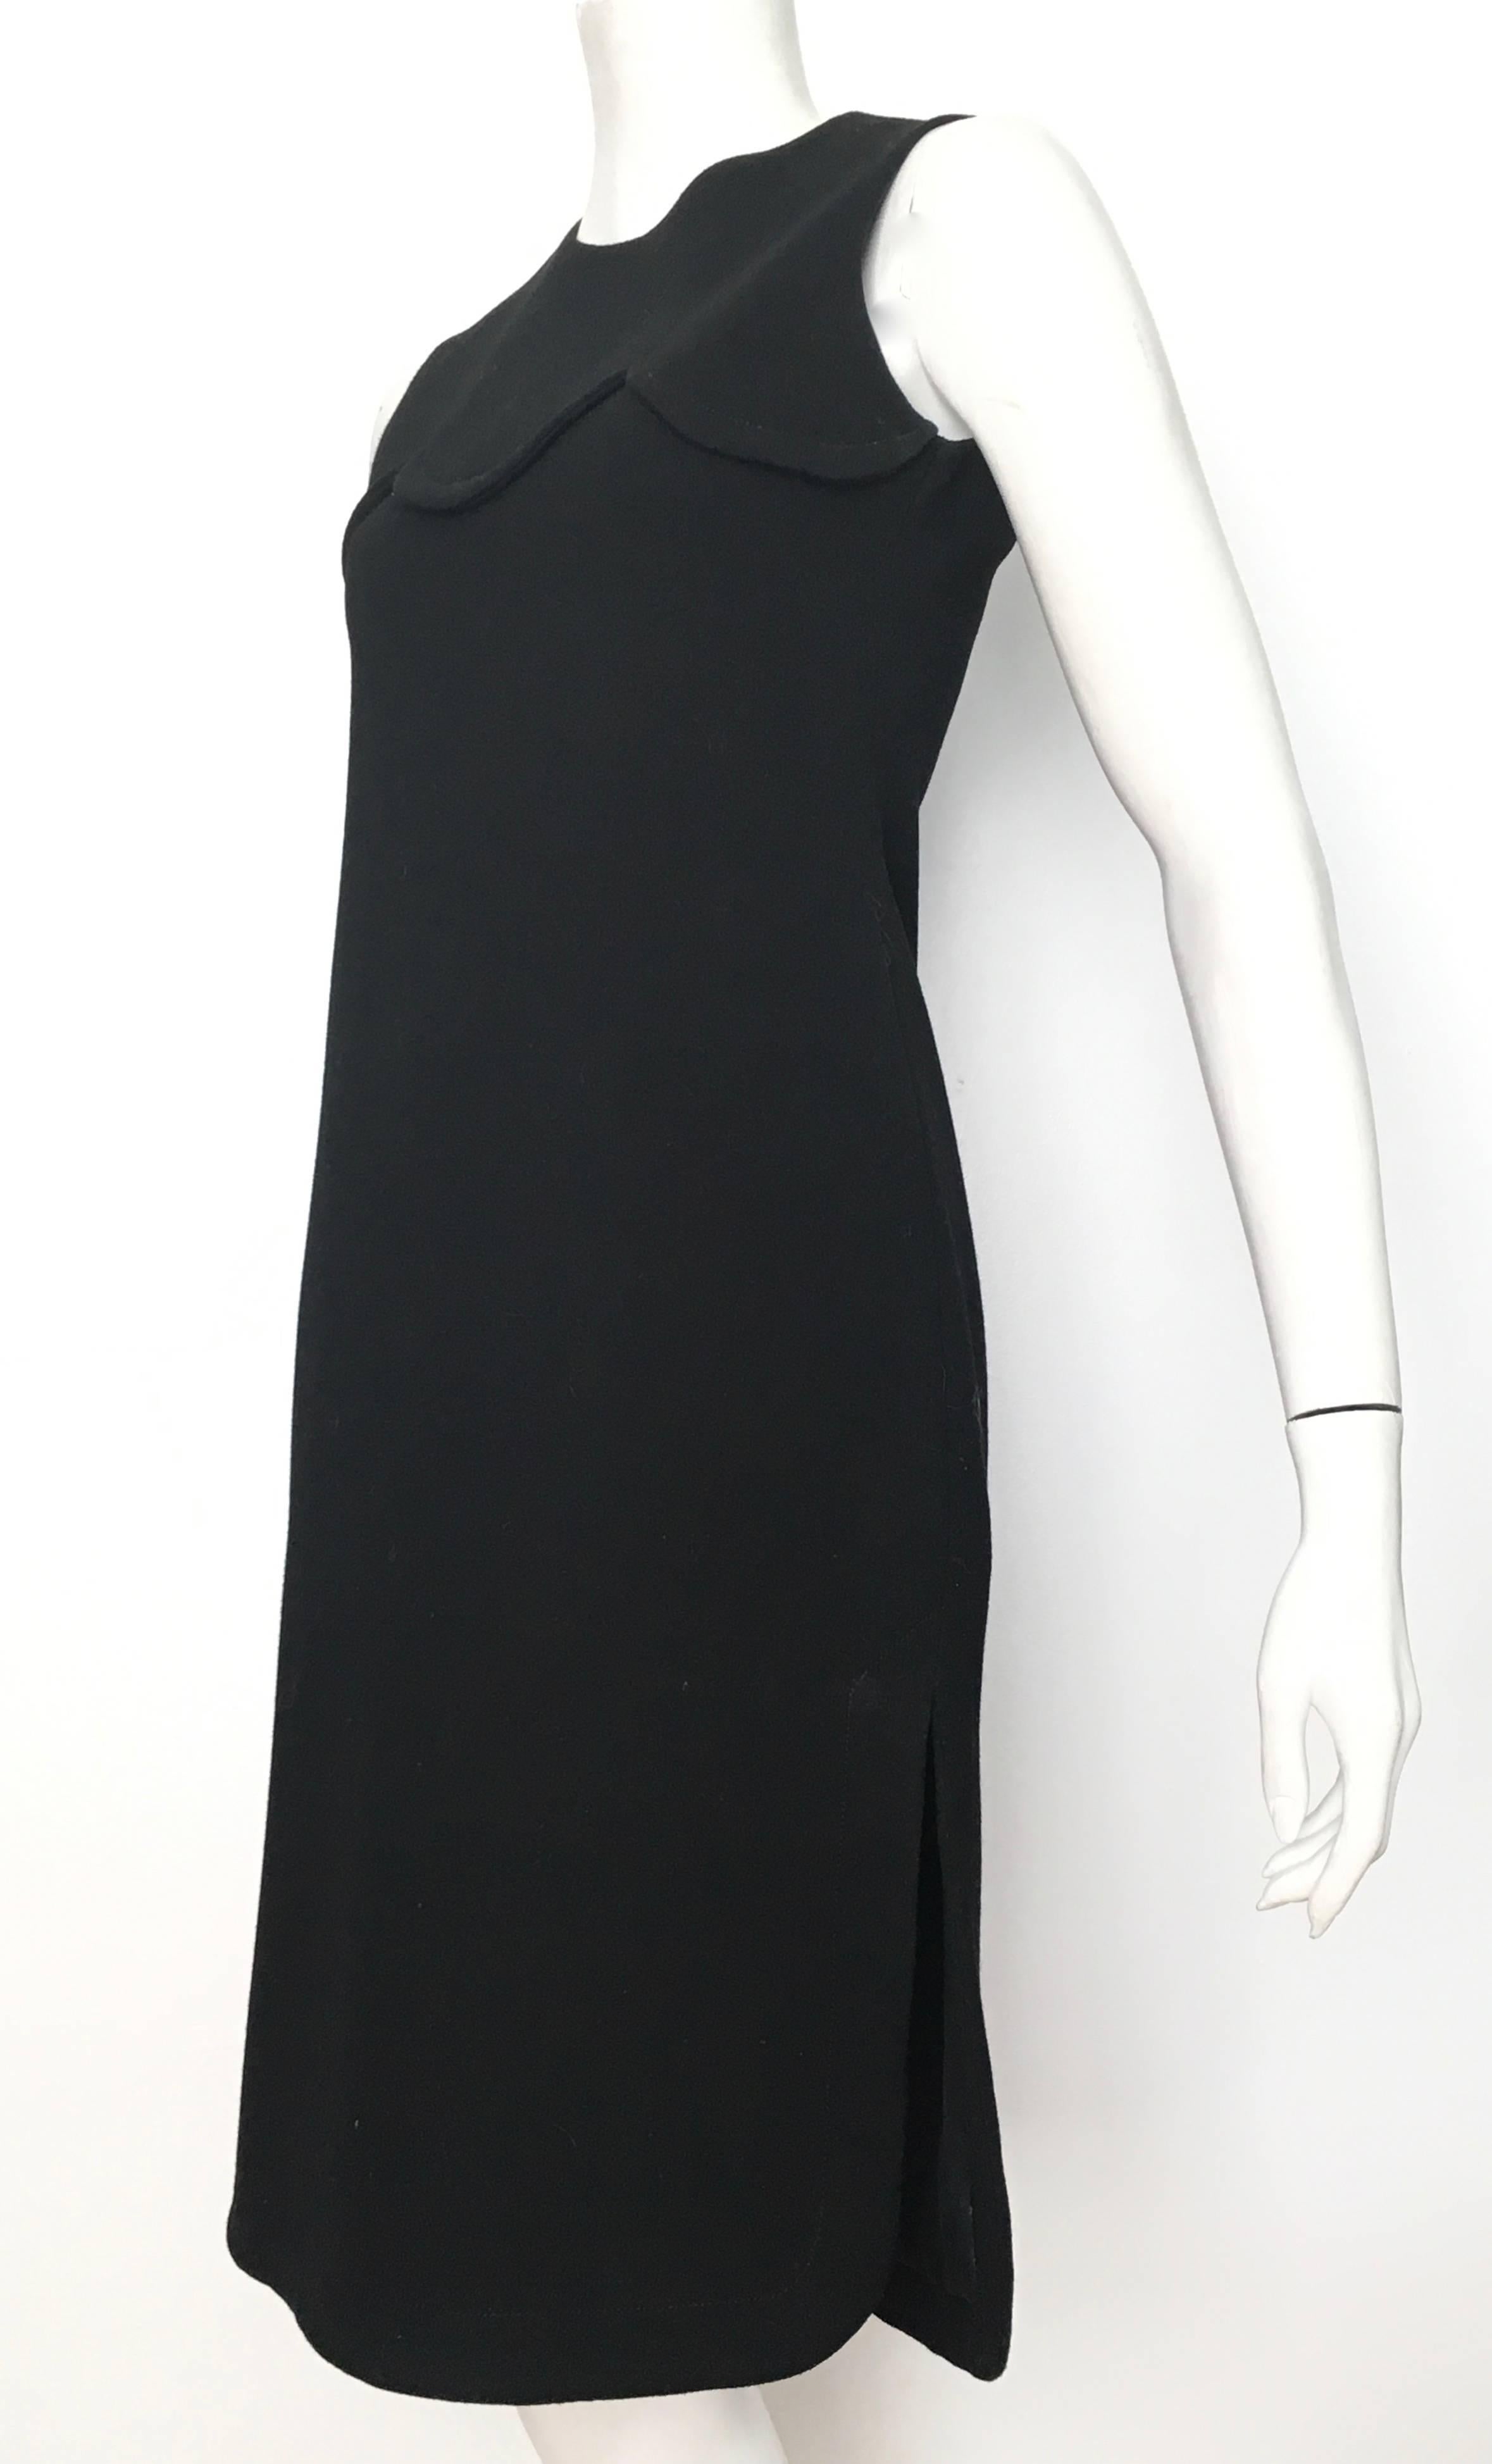 Pierre Cardin for Saks Fifth Avenue 1971 Black Wool Sleeveless Dress Size 6. 5